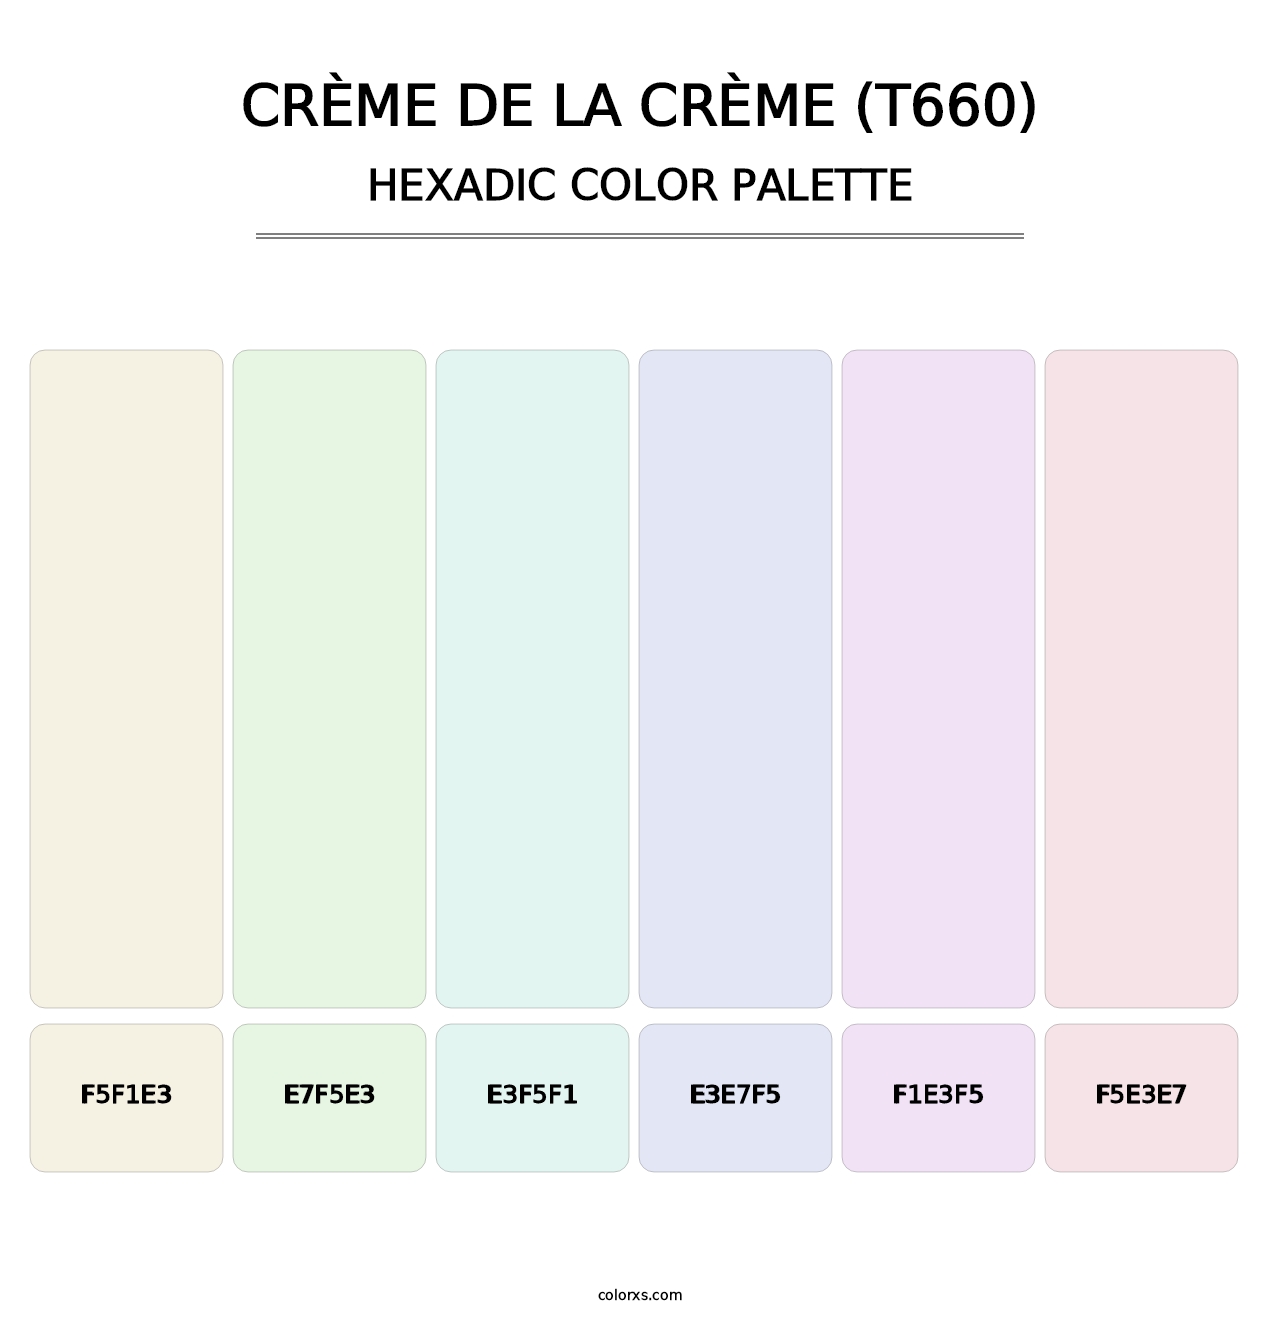 Crème de la Crème (T660) - Hexadic Color Palette